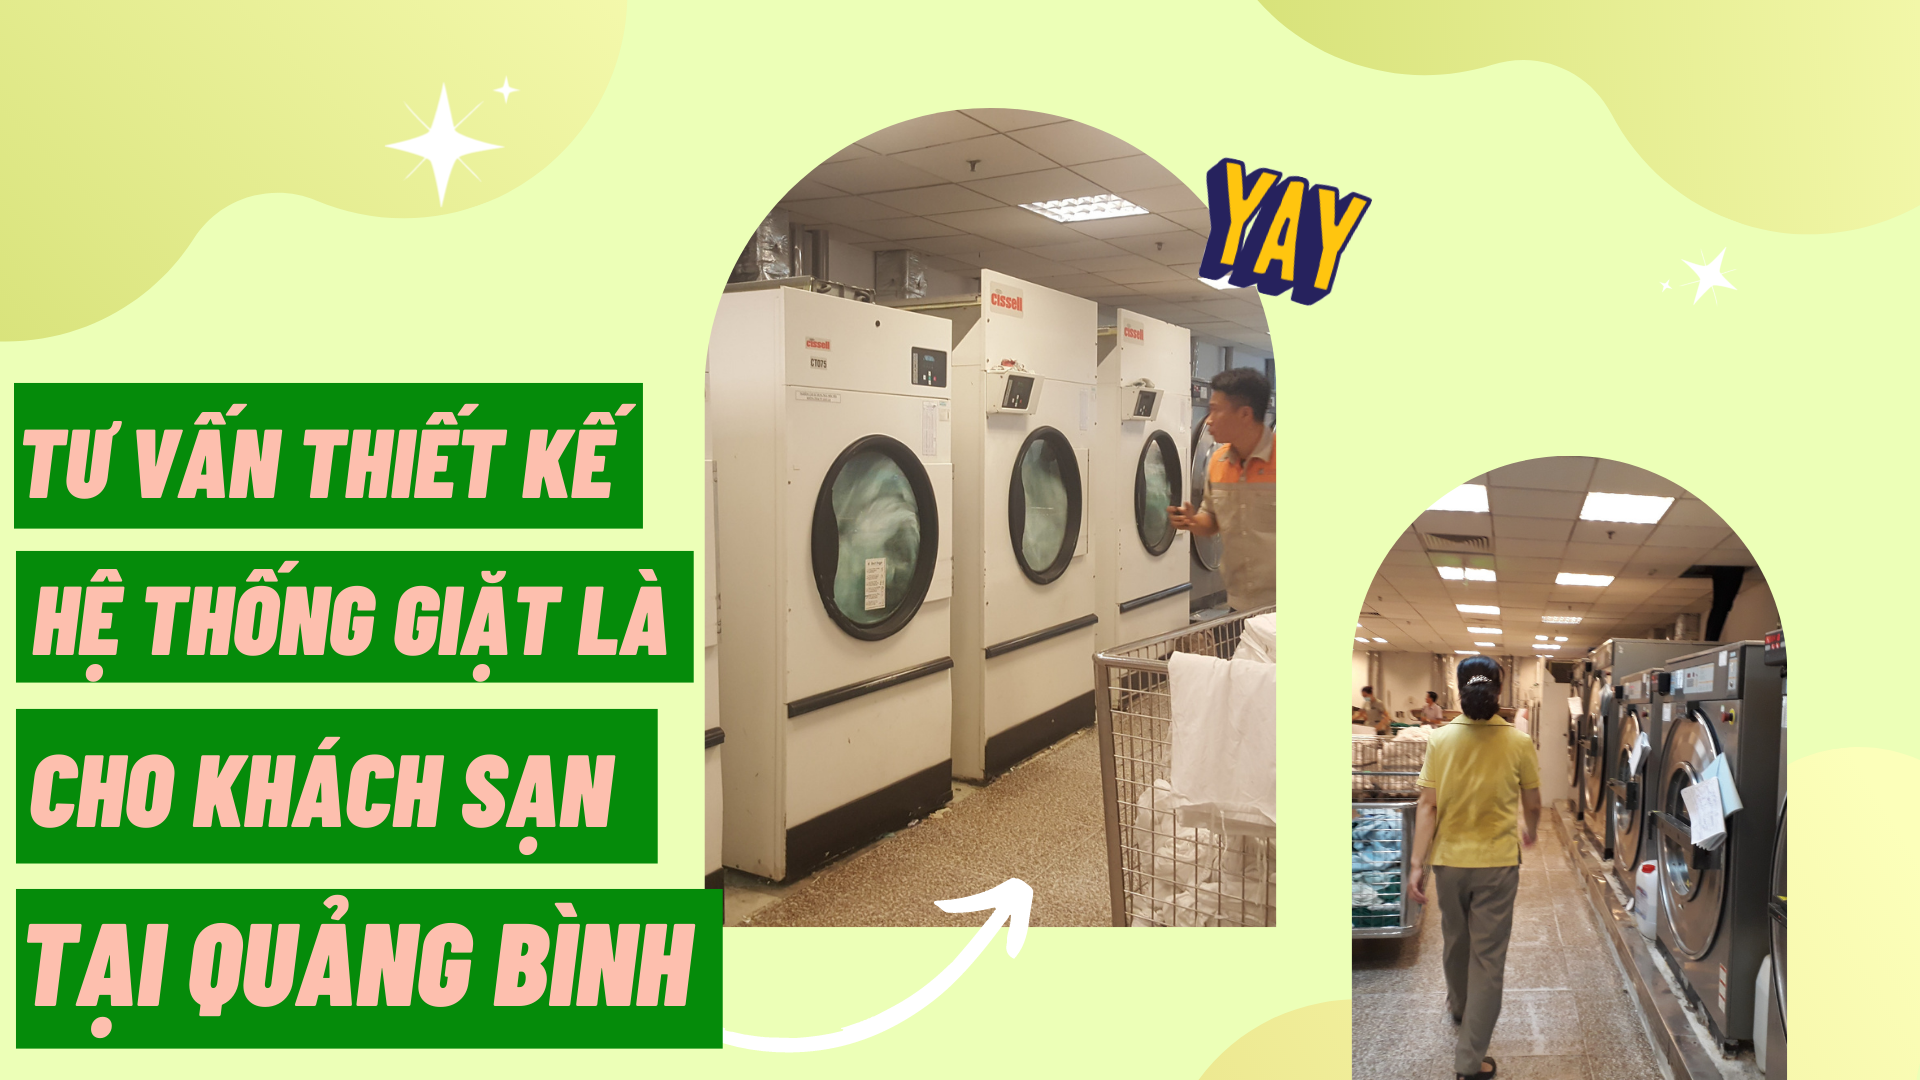 Tư vấn thiết kế hệ thống giặt là cho khách sạn tại Quảng Bình